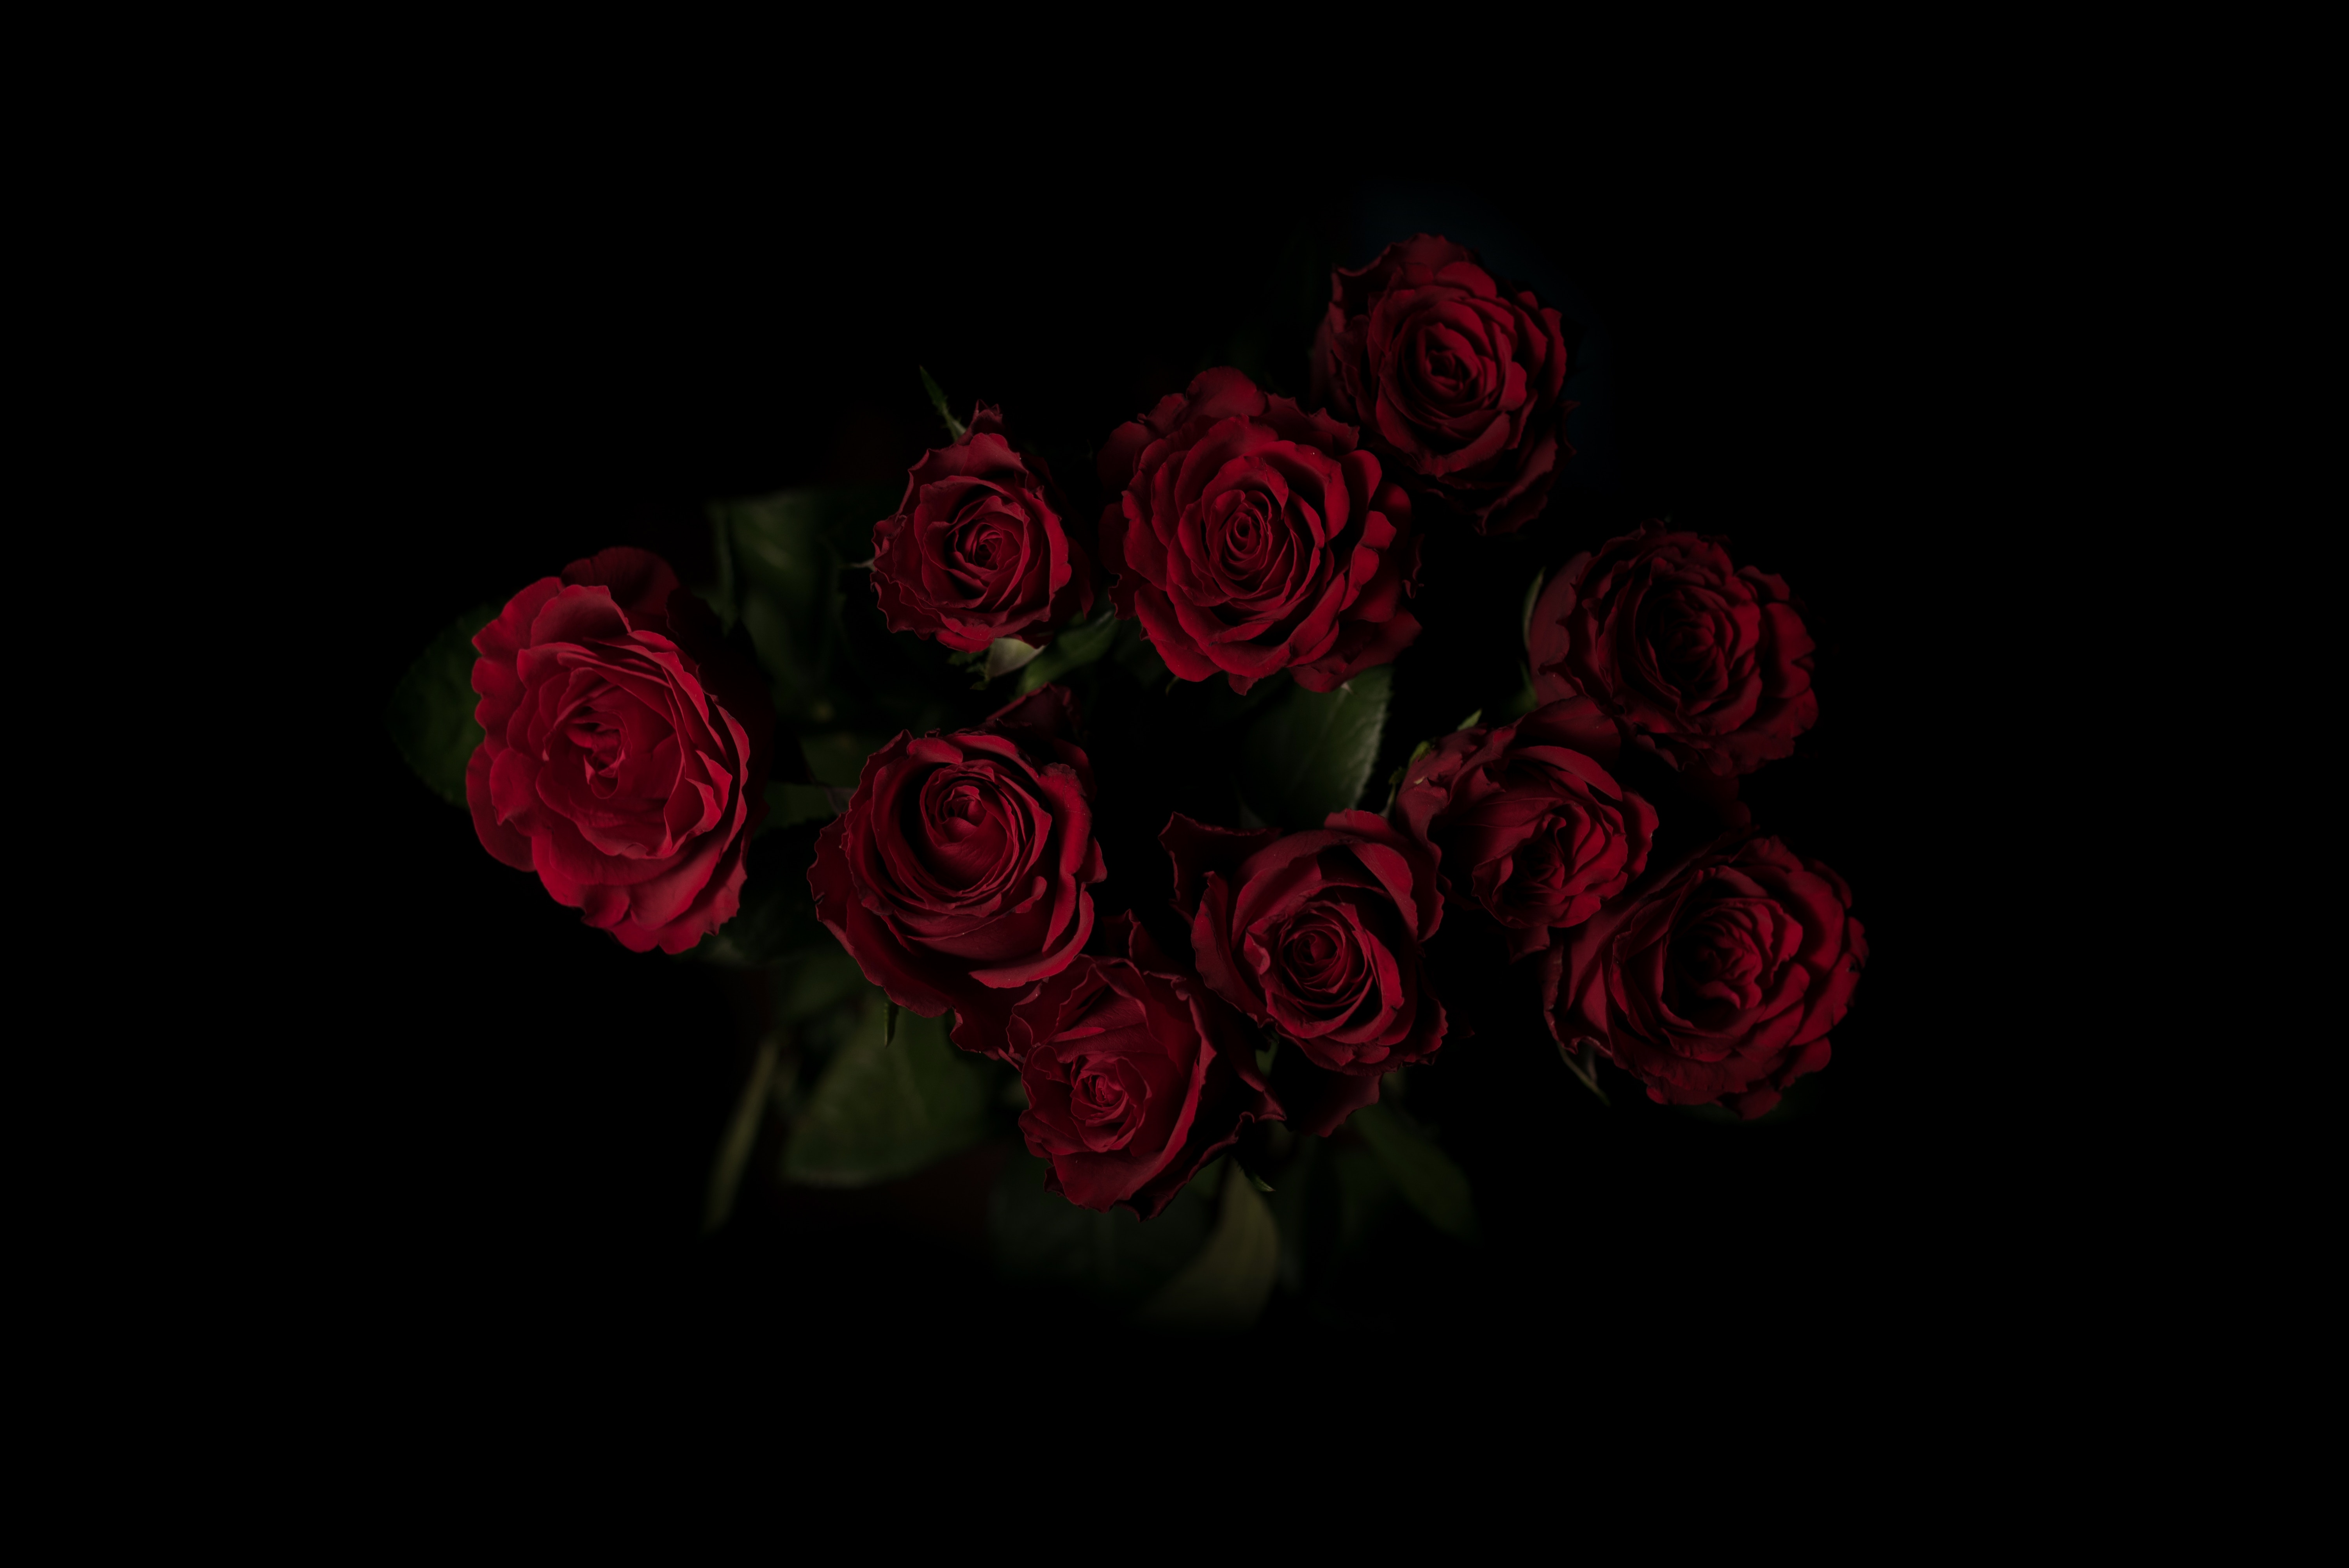 109641 обои 540x960 на телефон бесплатно, скачать картинки темный фон, цветы, красный, розы 540x960 на мобильный